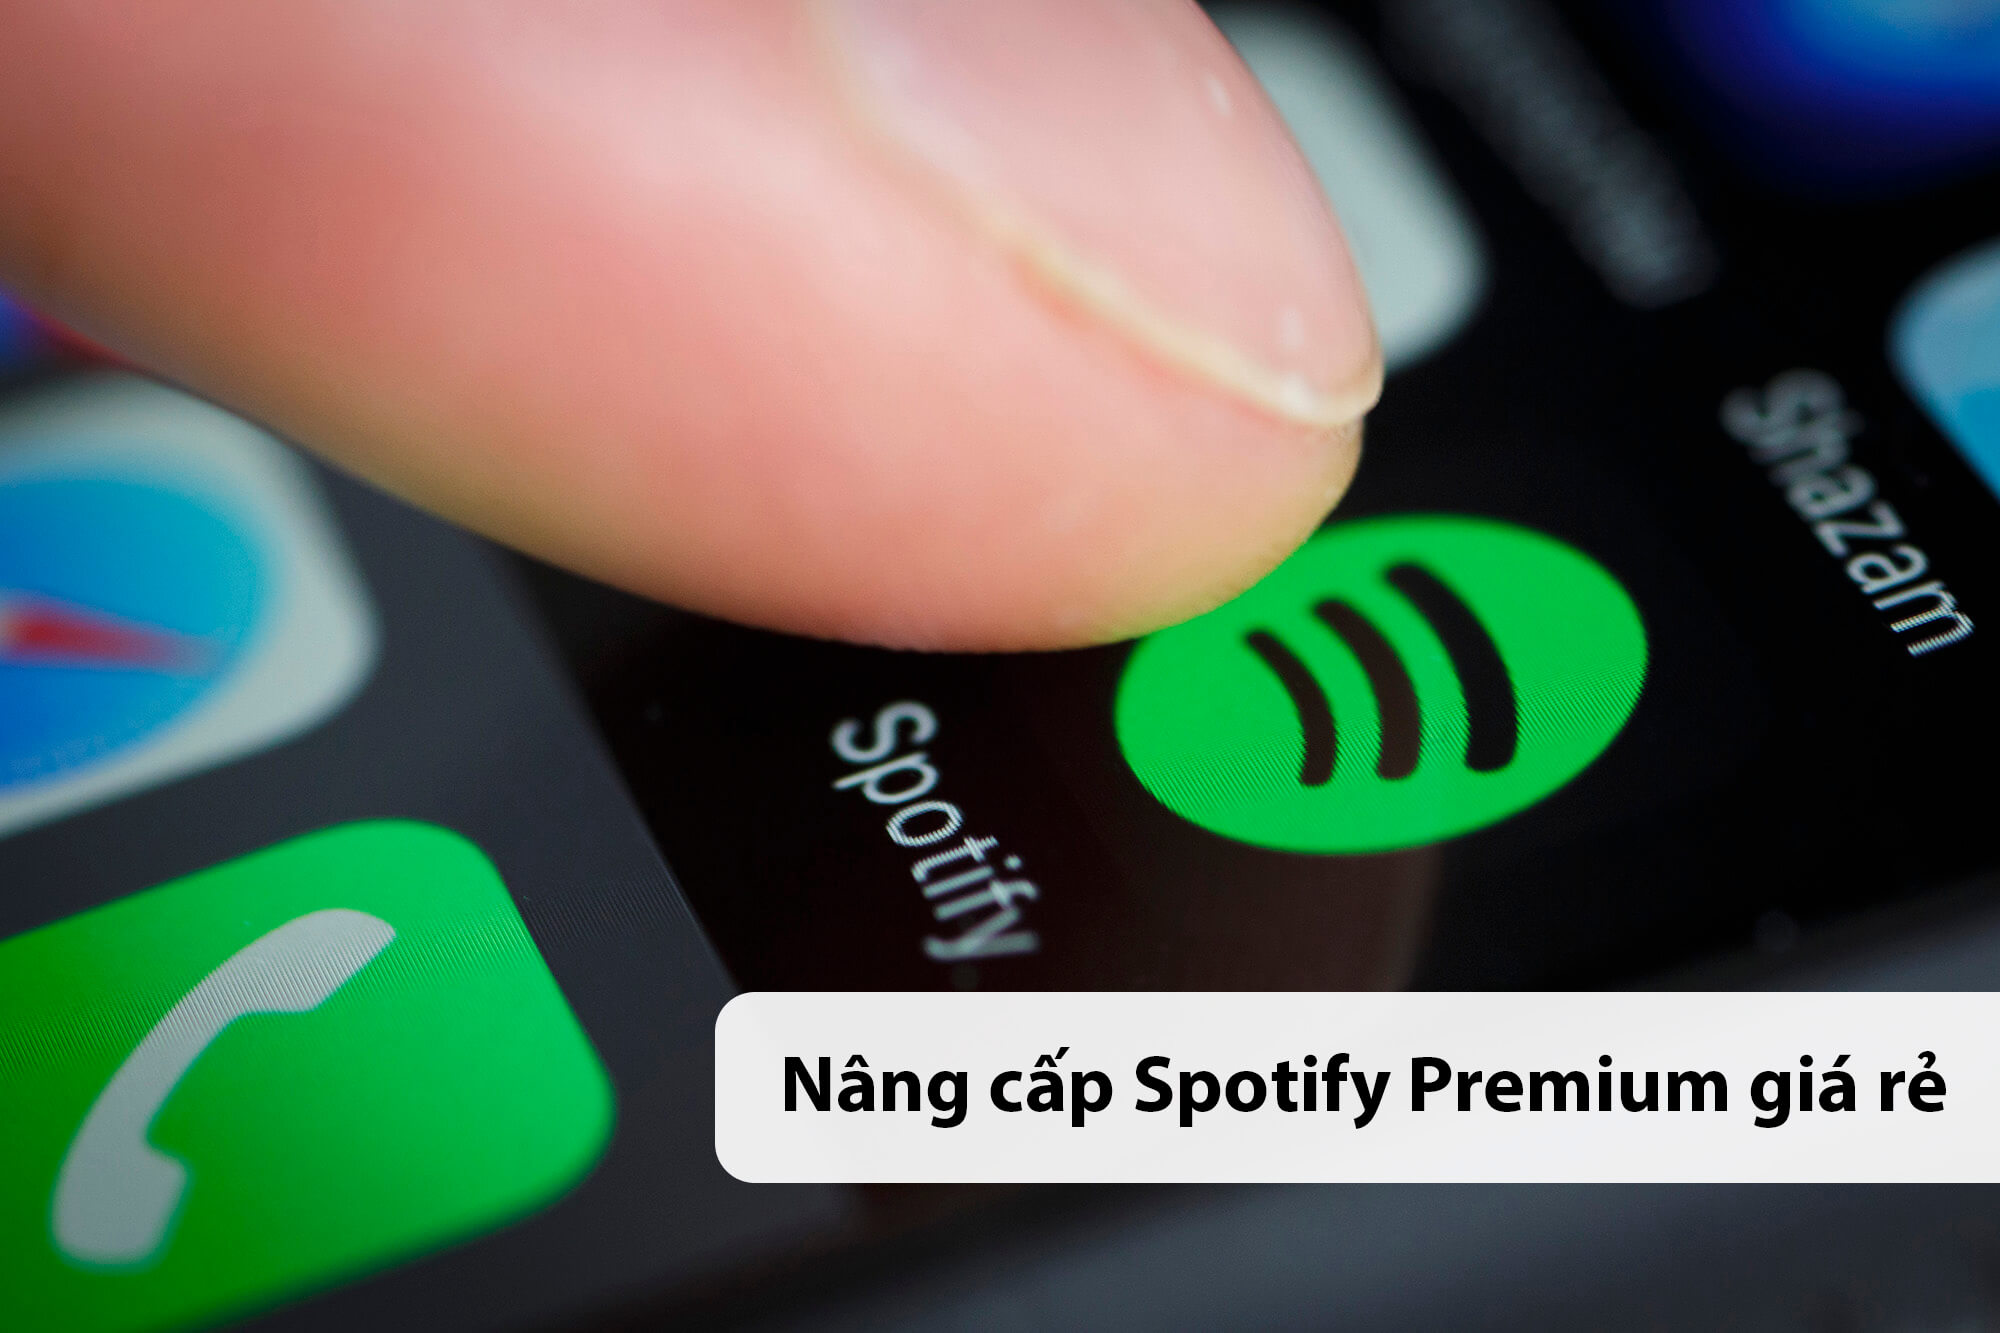 nang cap spotify premium gia re 1